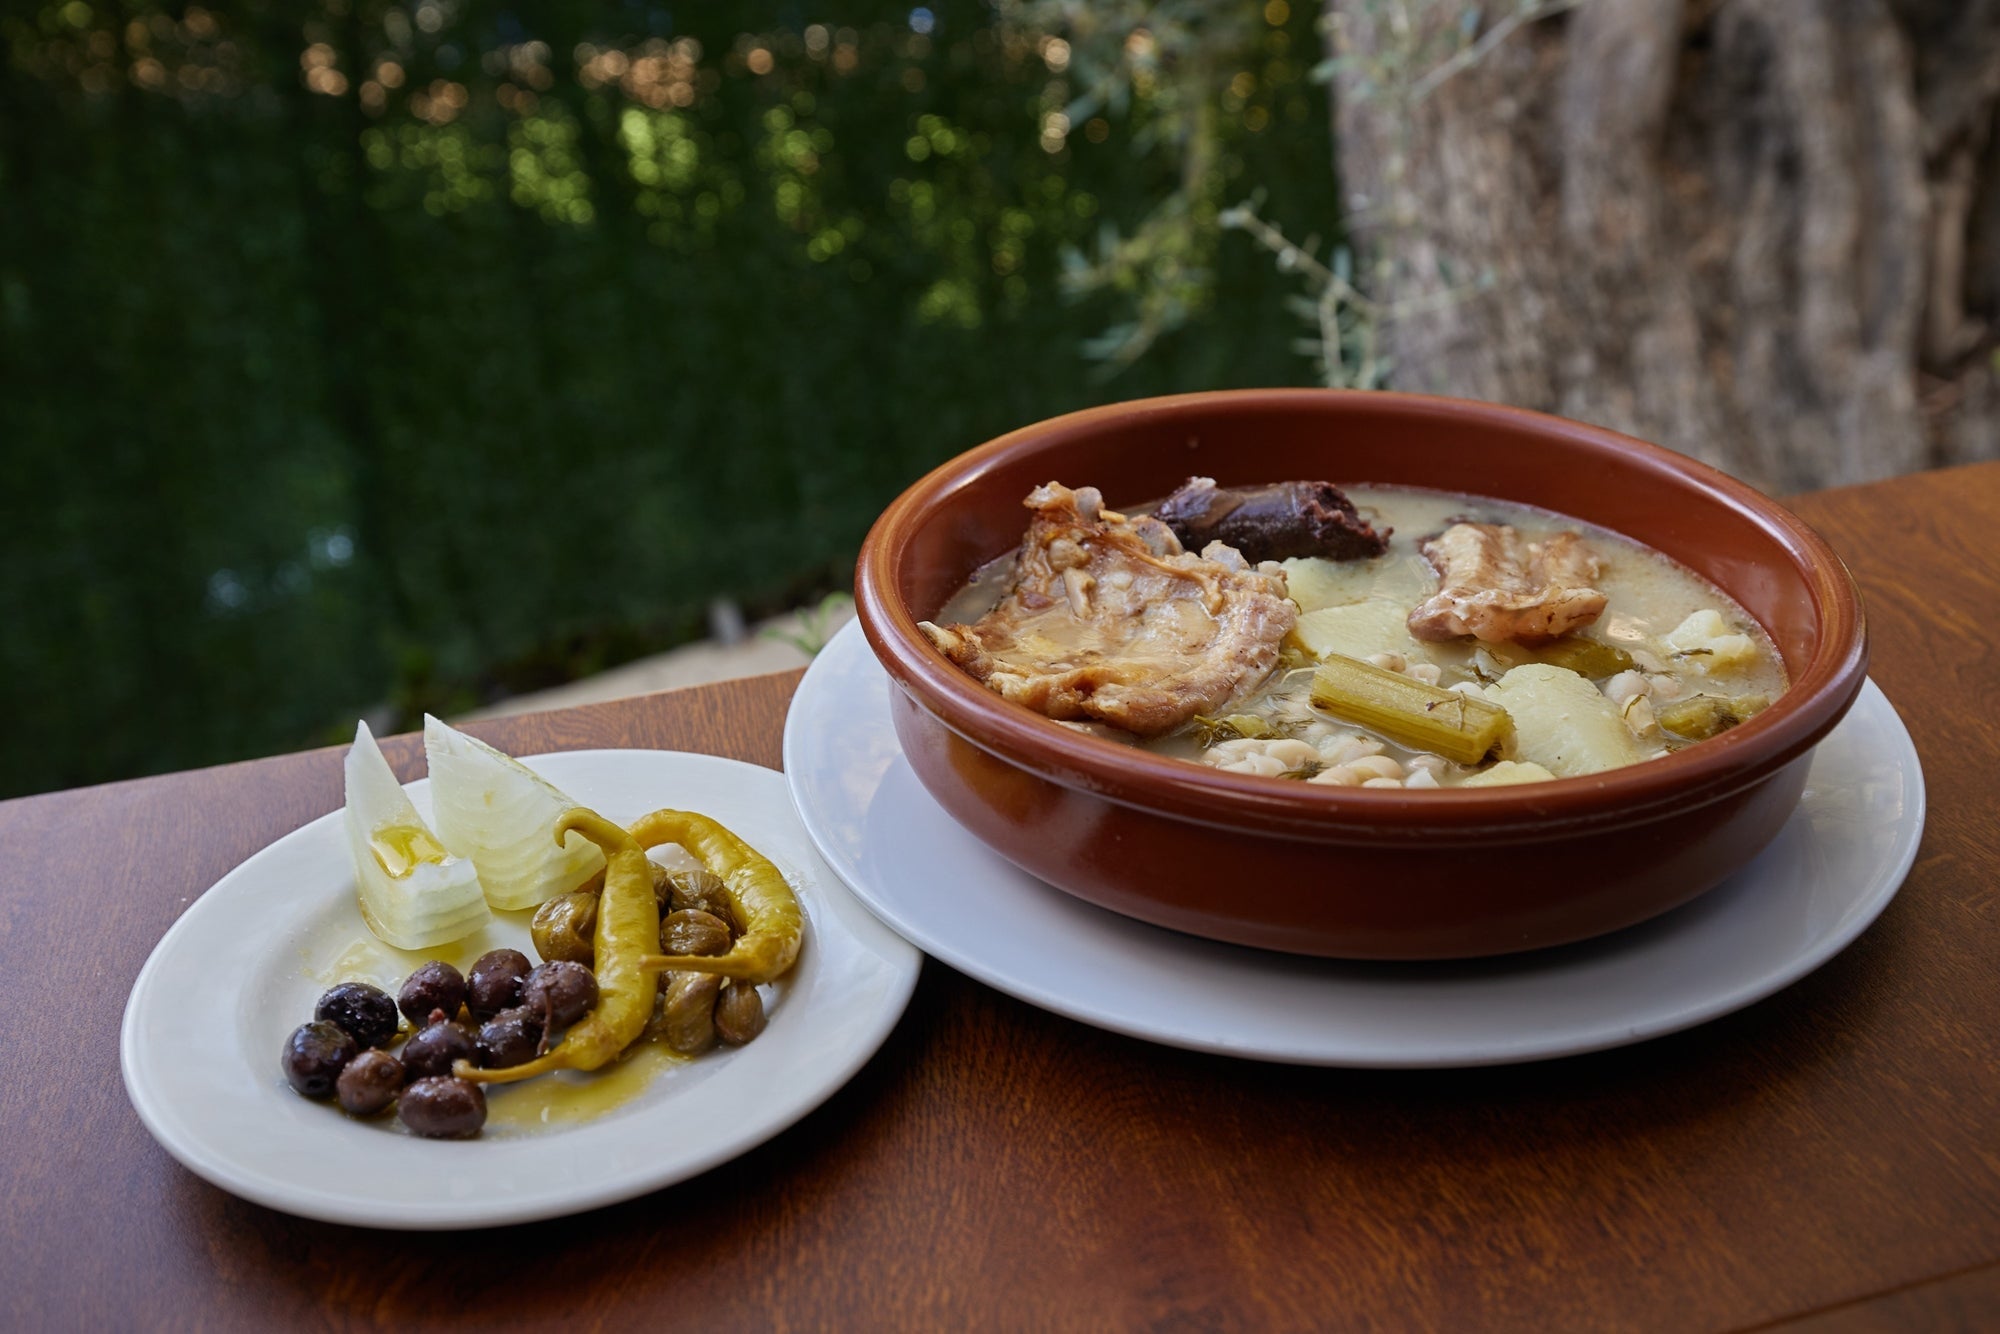 Comida típica de Granada. 11 platos que saben a tradición | Guía Repsol |  Guía Repsol